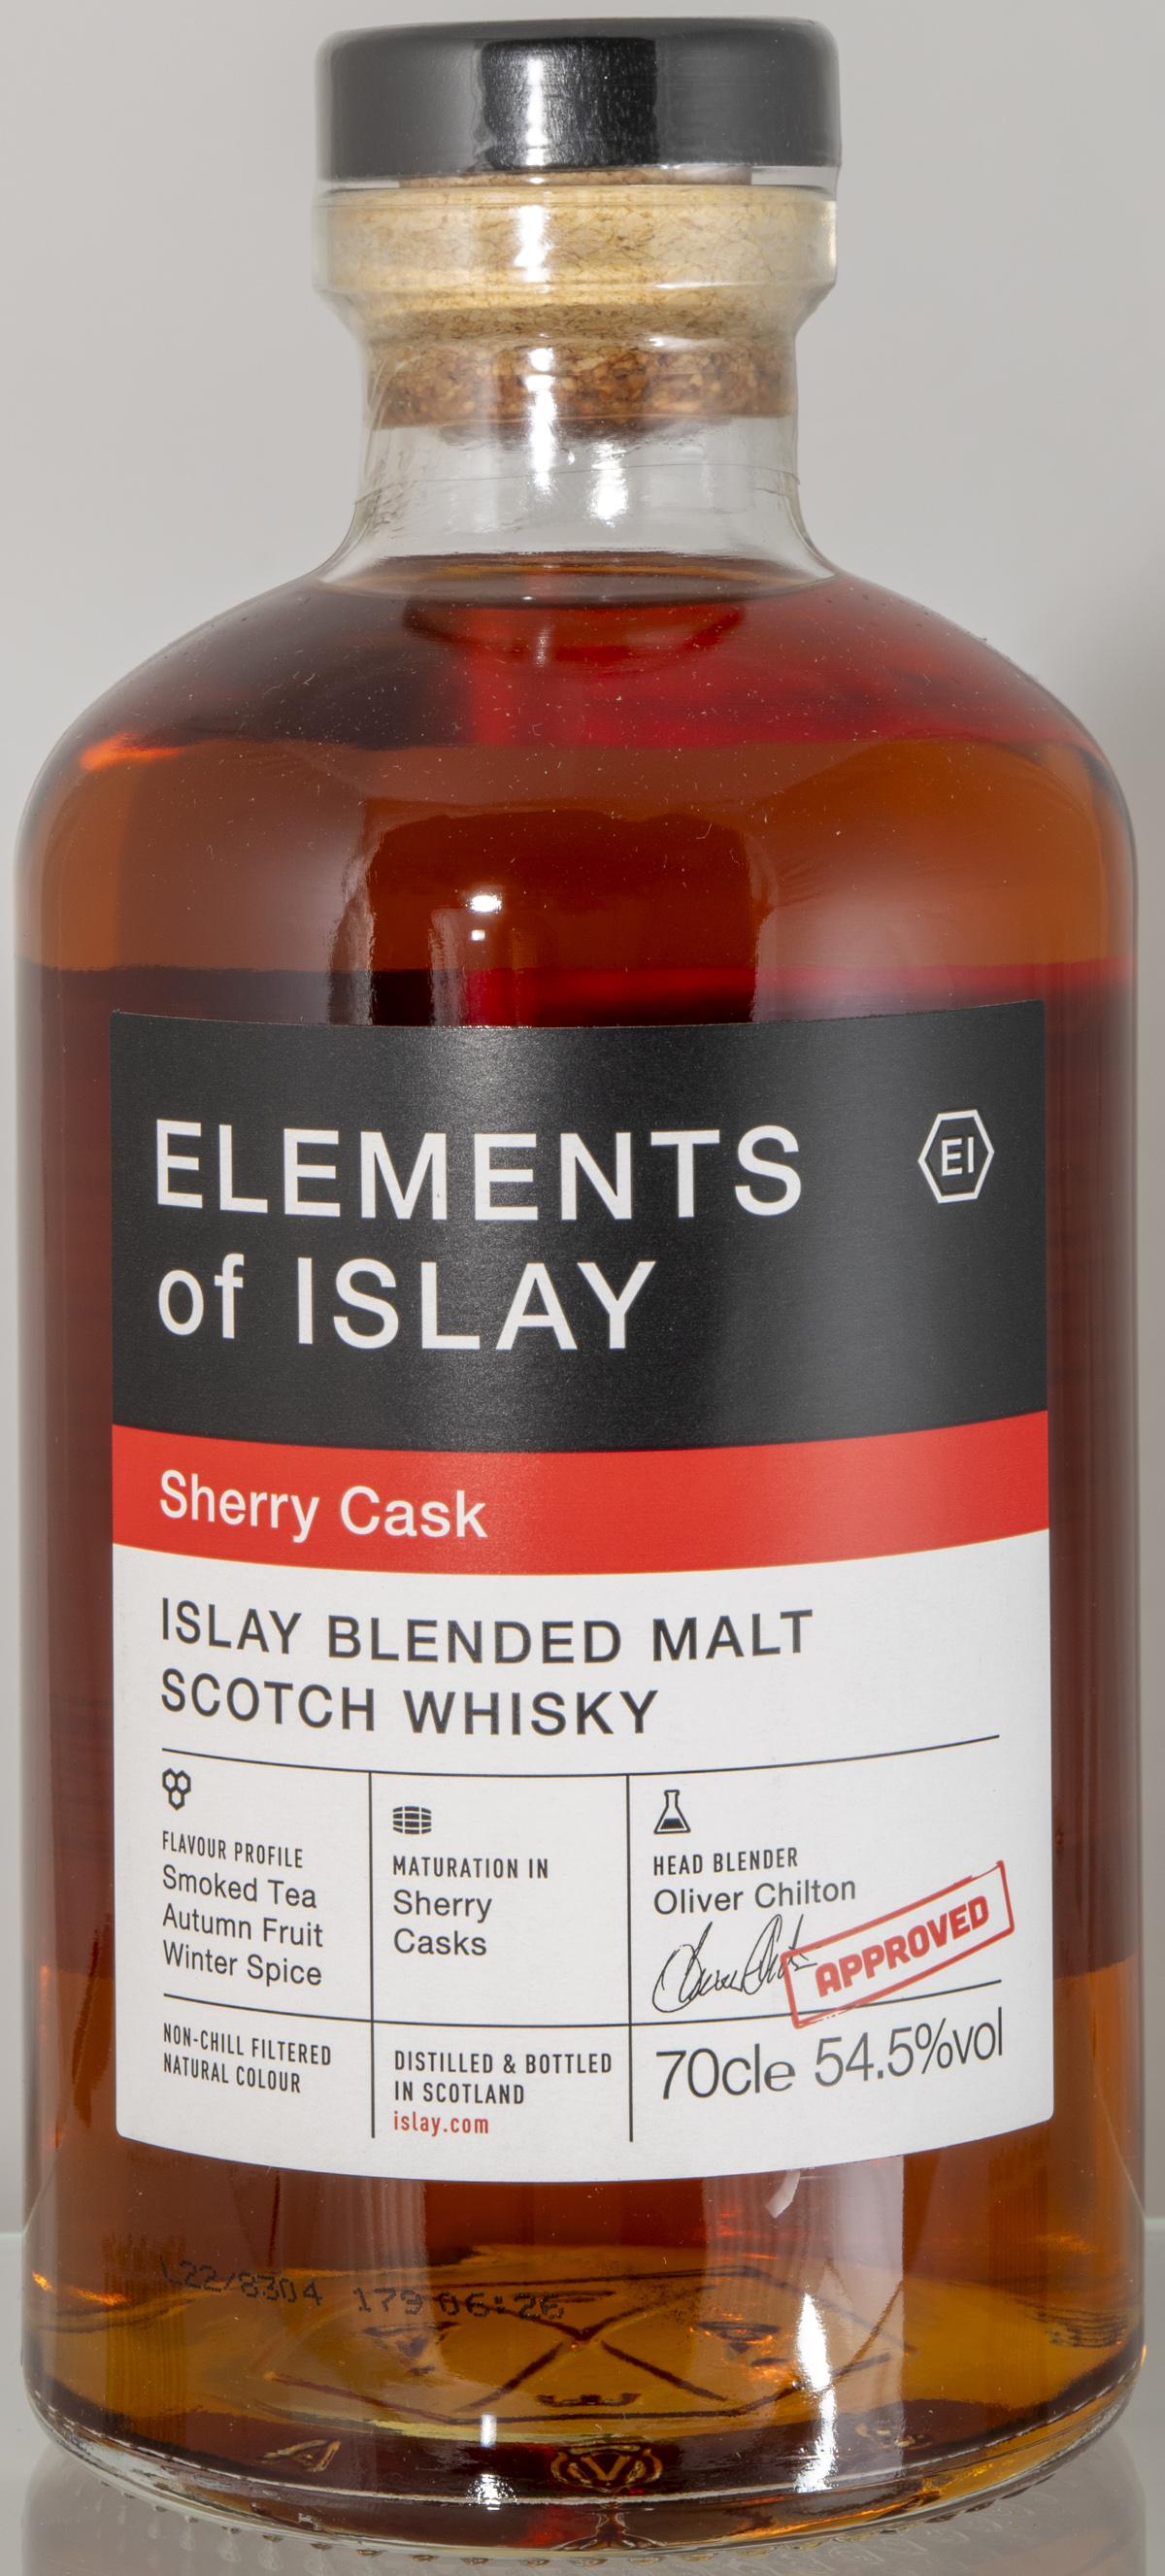 Billede: D85_8323 - Elements of Islay - Sherry Cask - bottle front.jpg